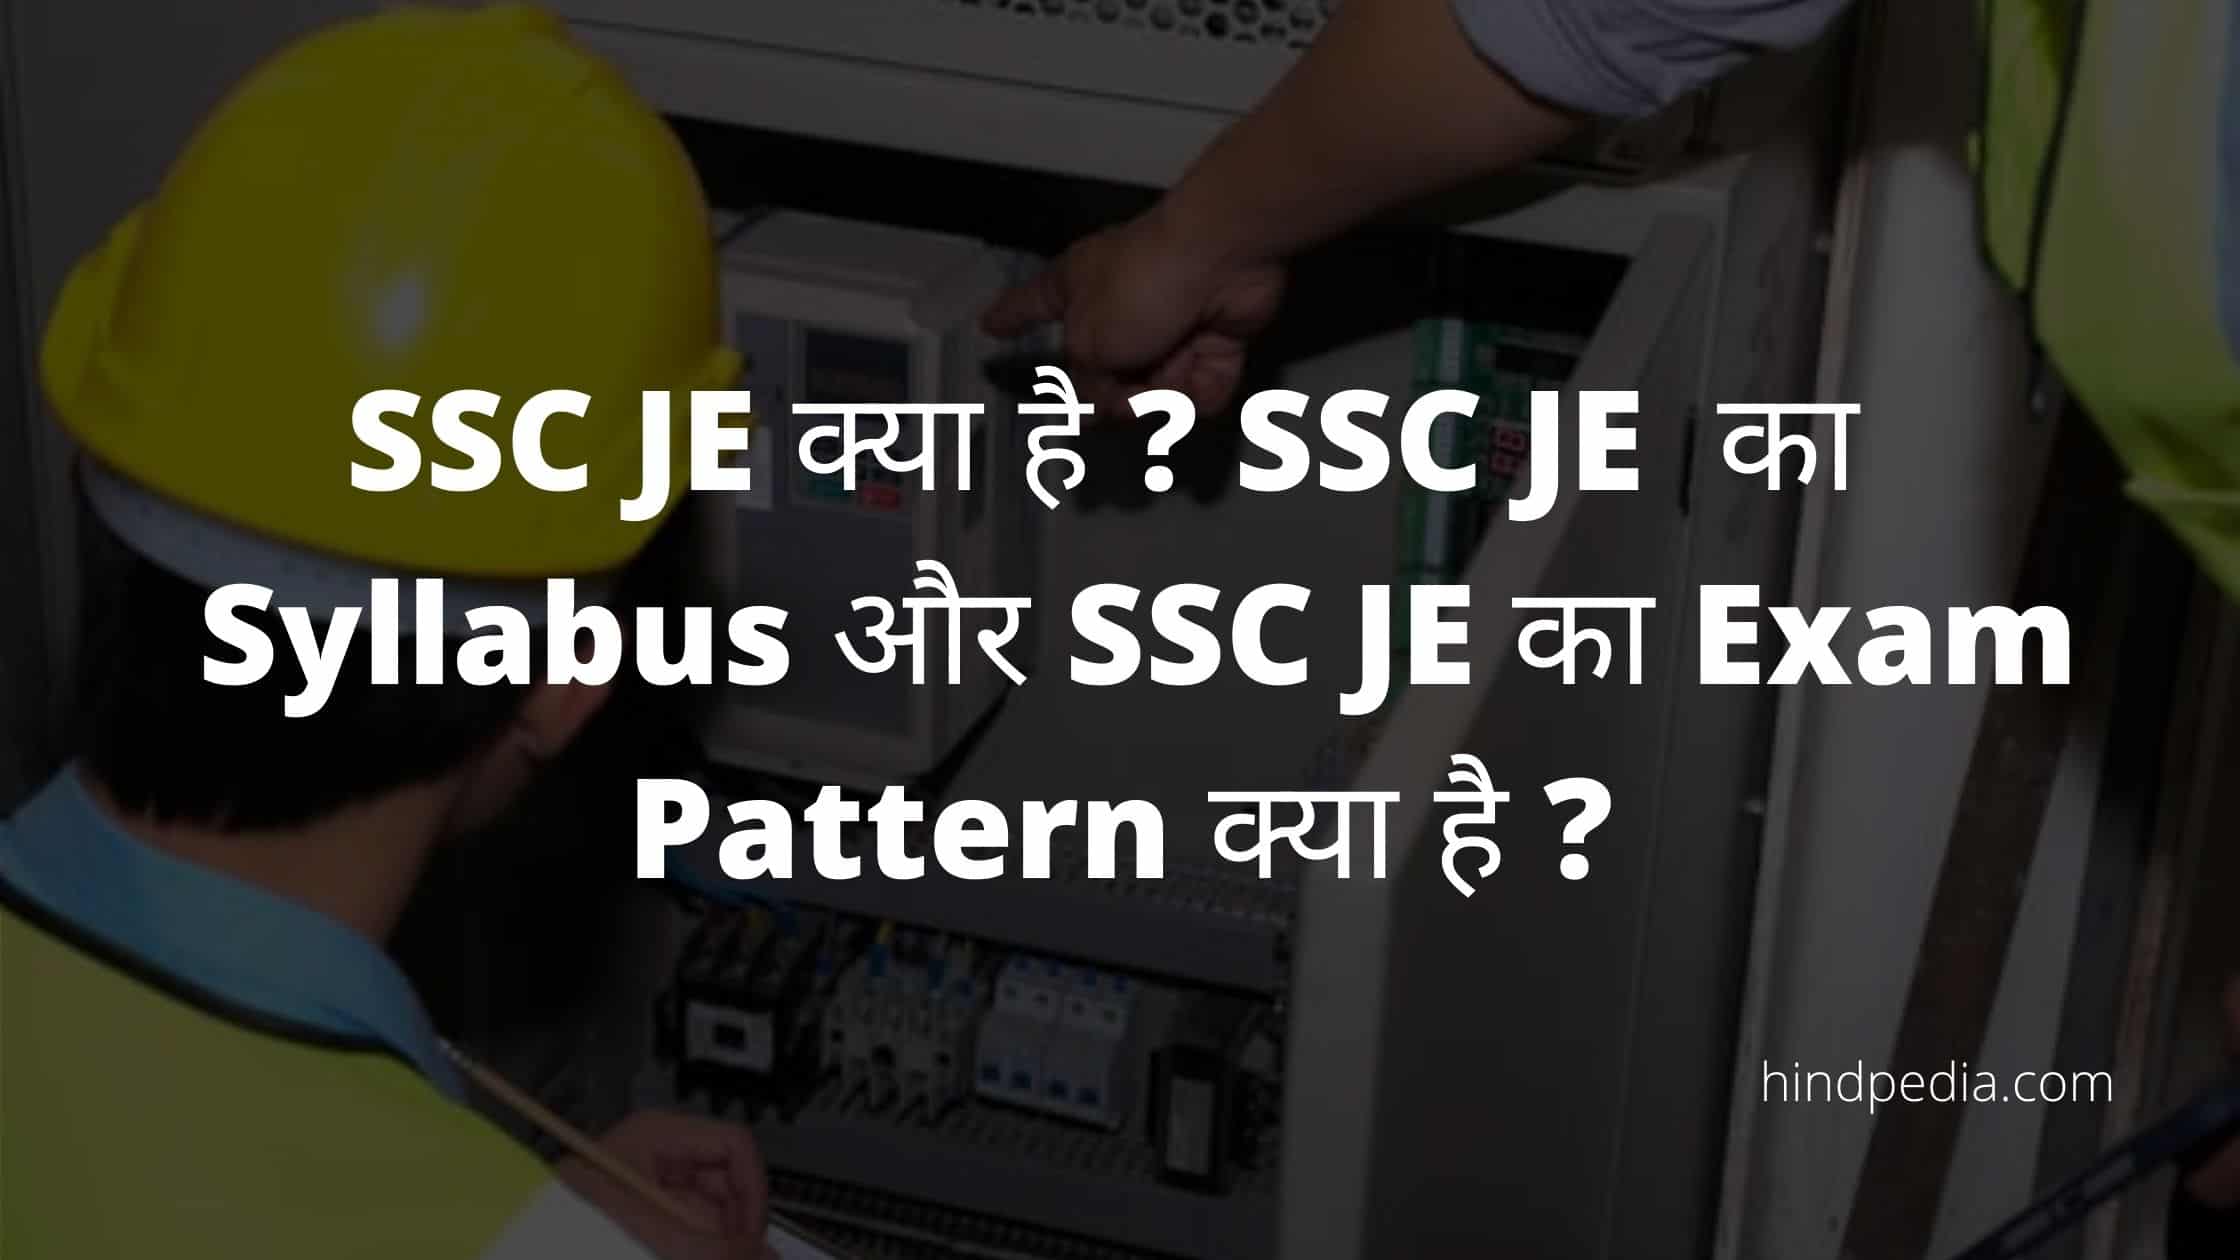 SSC JE क्या है ? SSC JE का Syllabus और SSC JE का Exam Pattern क्या है ?